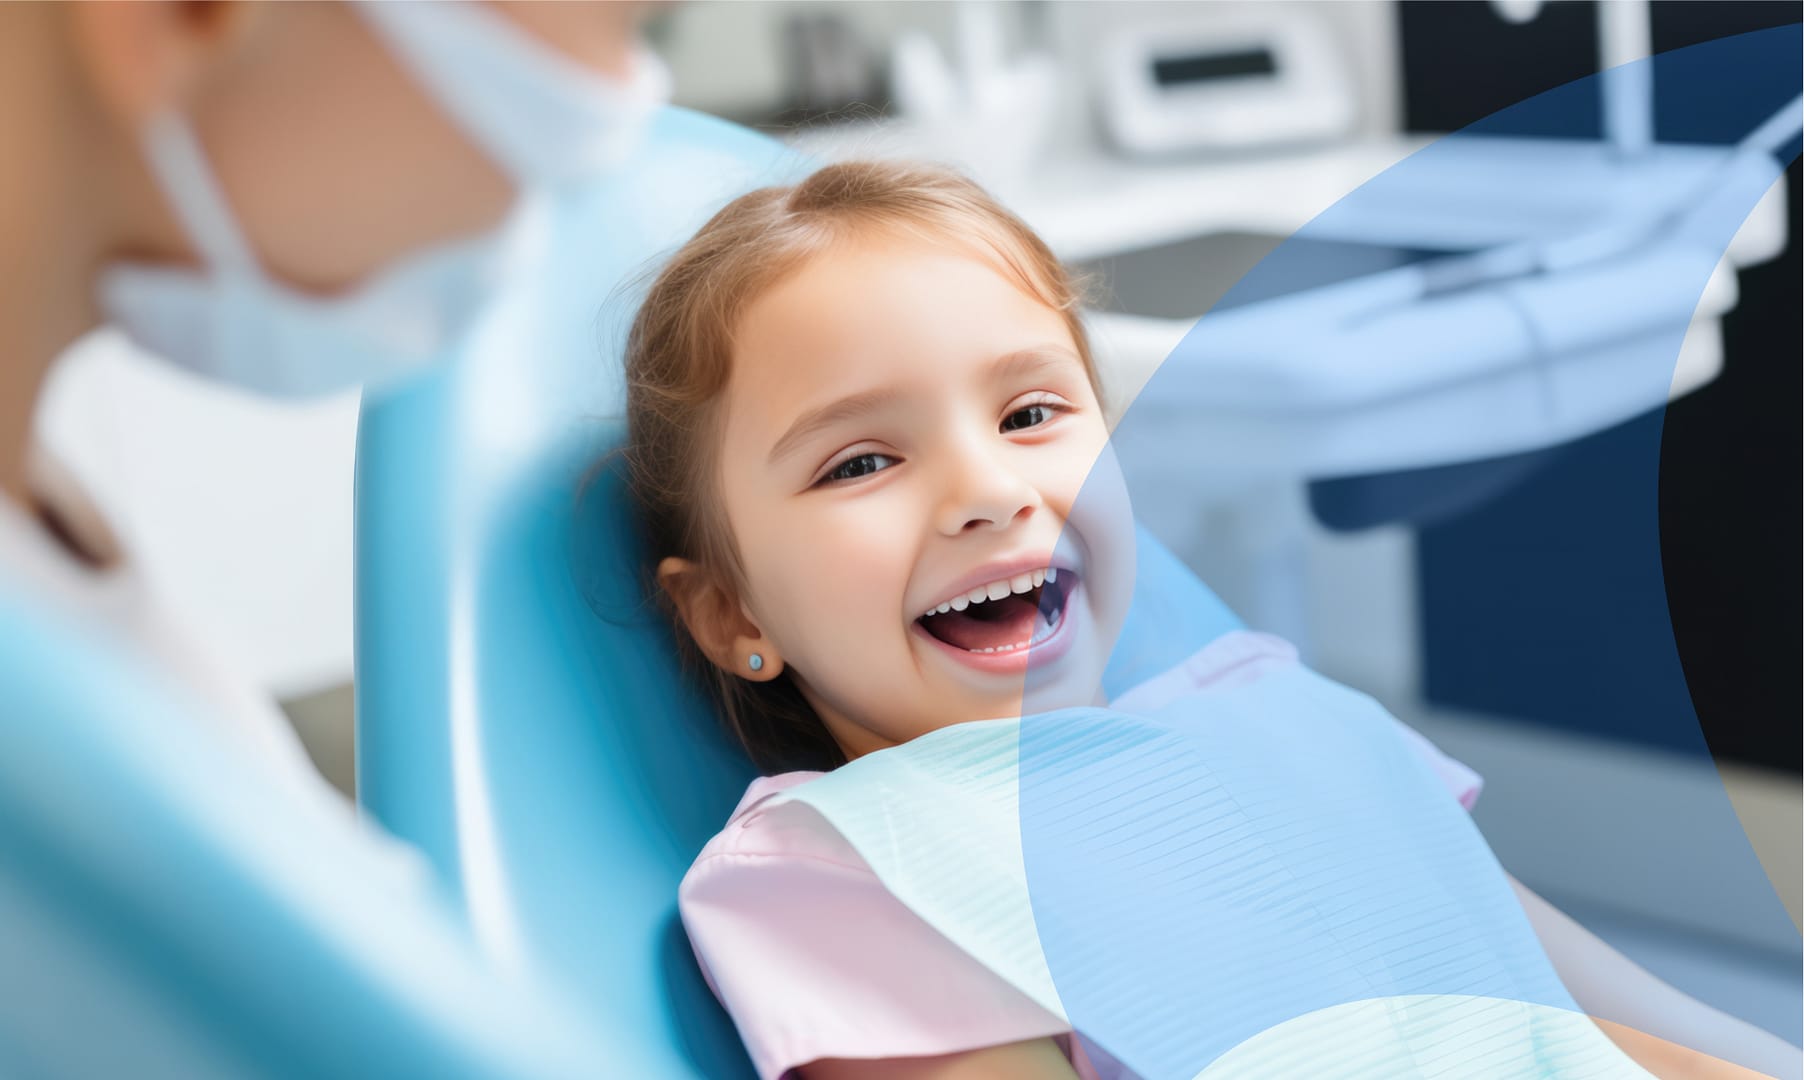 Dental crowns protect kids teeth.